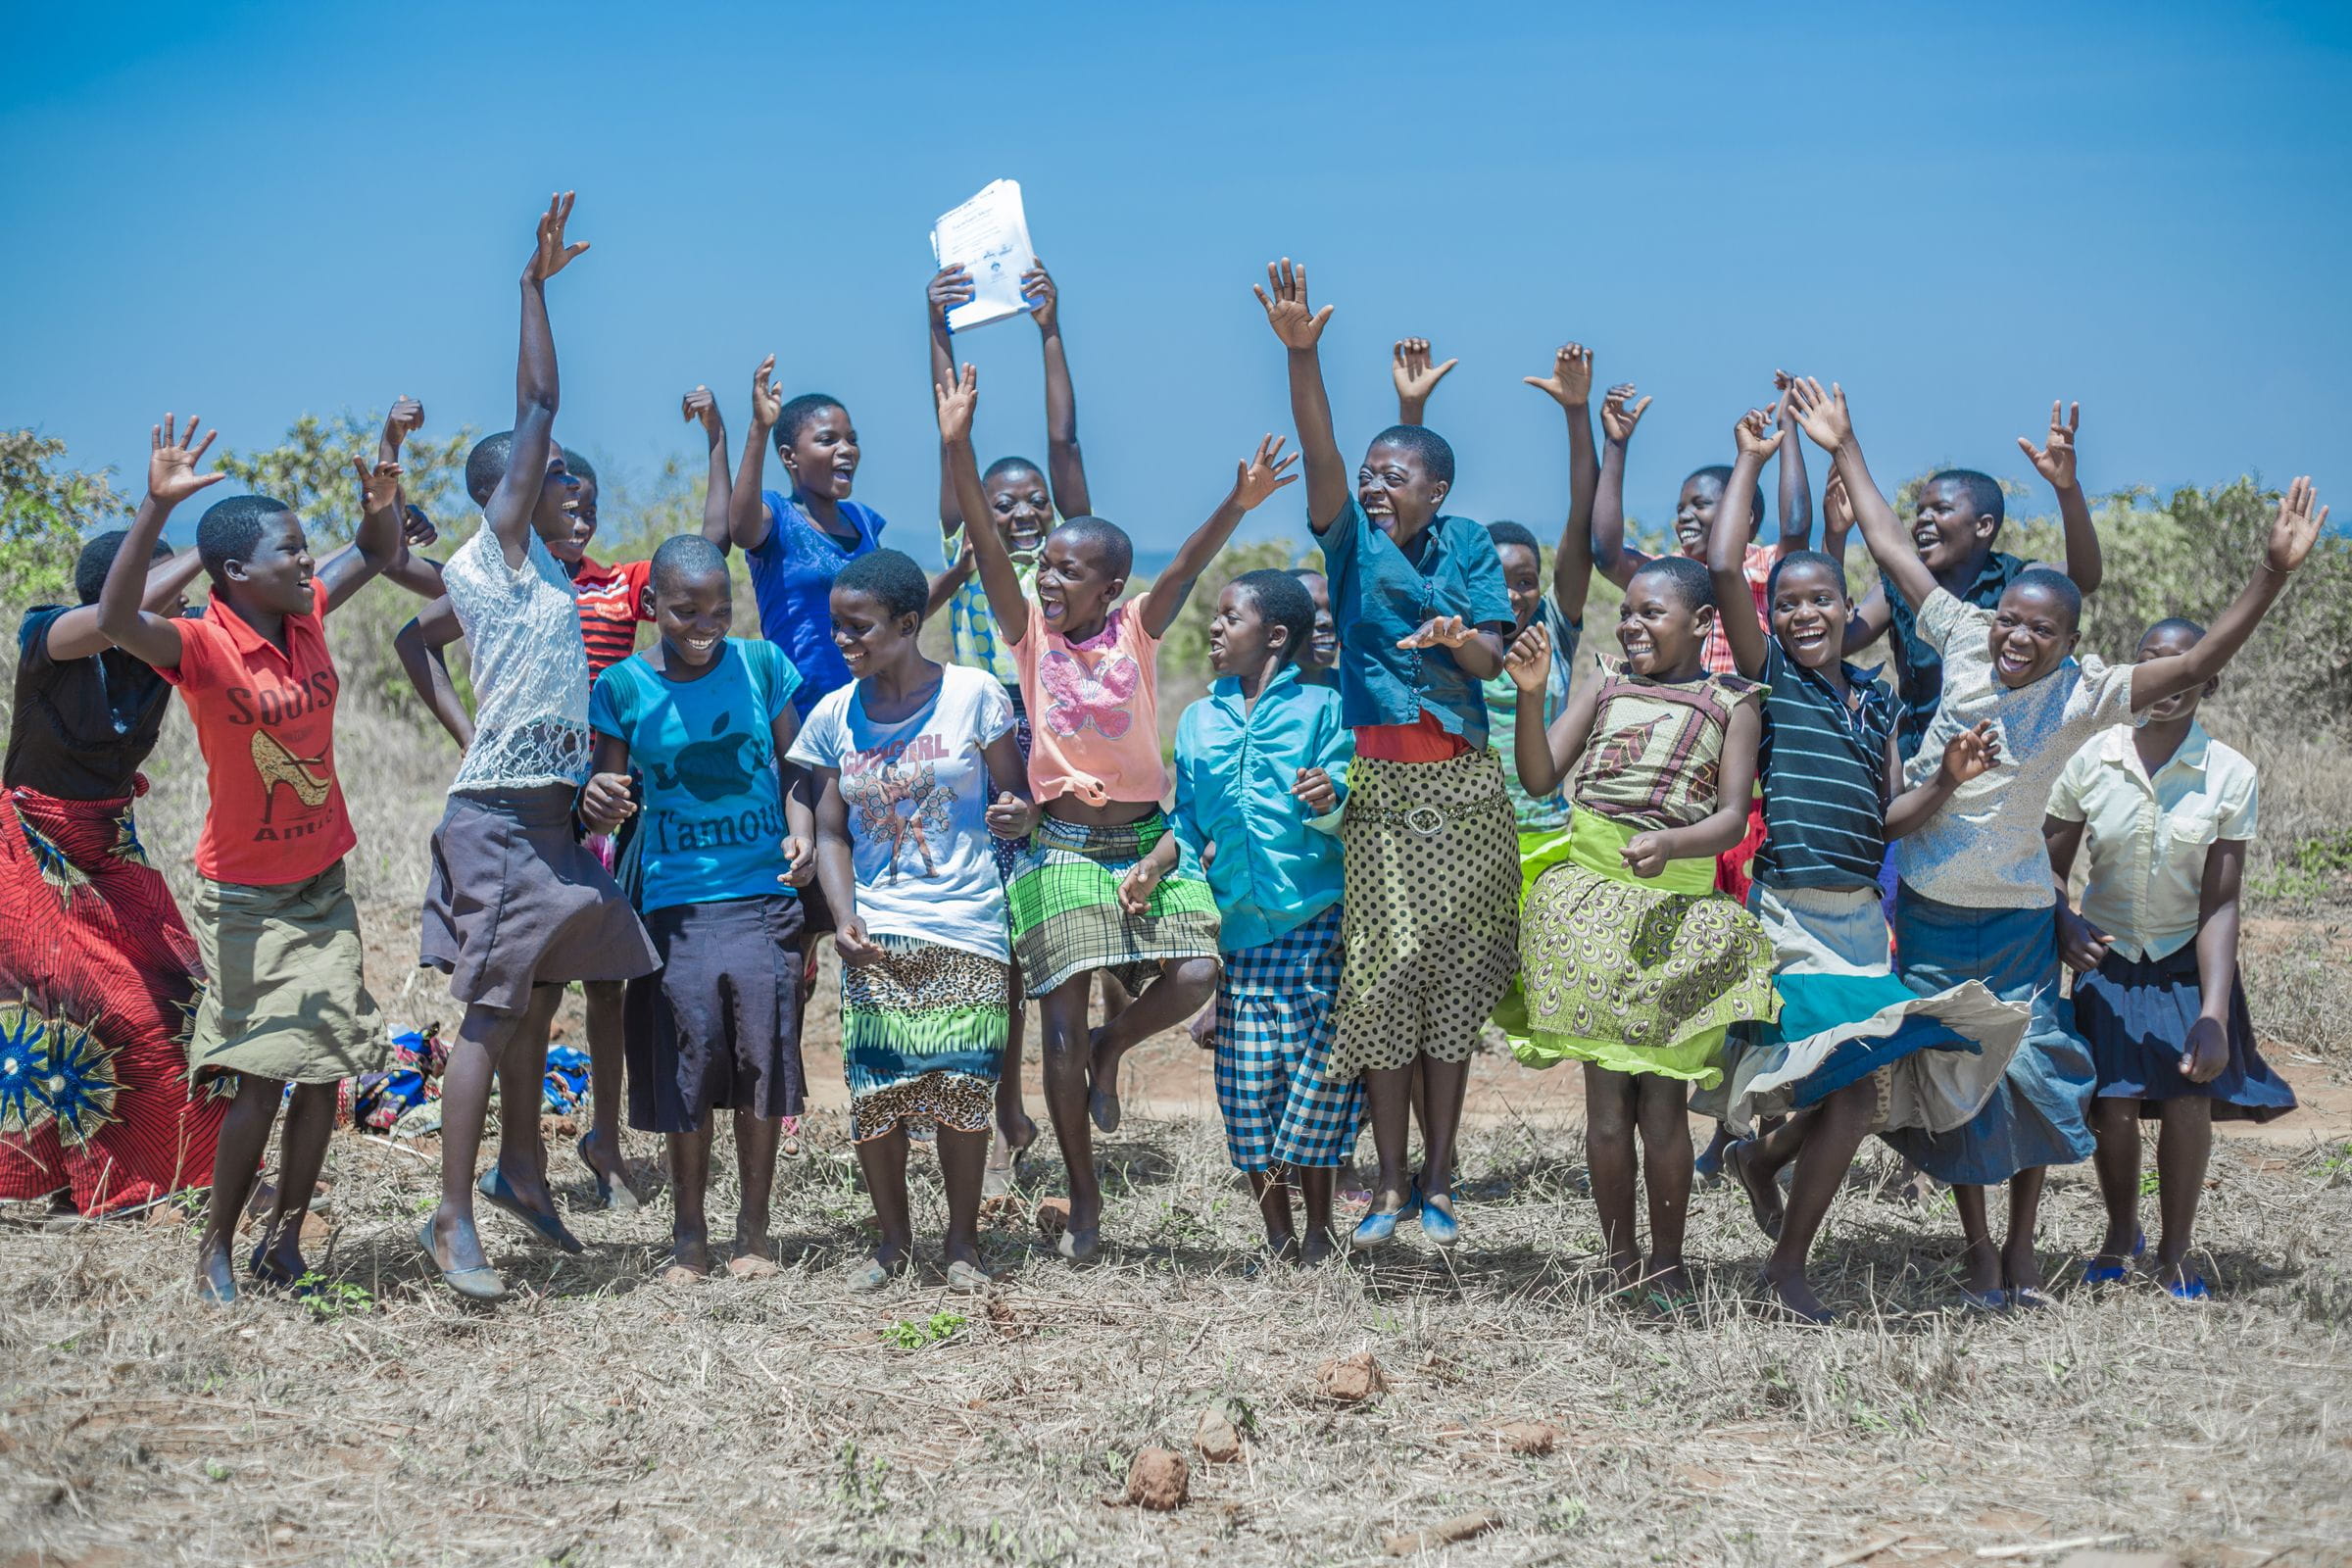 Kinder in Malawi springen glücklich lachend in die Luft. (Quelle: Moving Minds Multimedia)